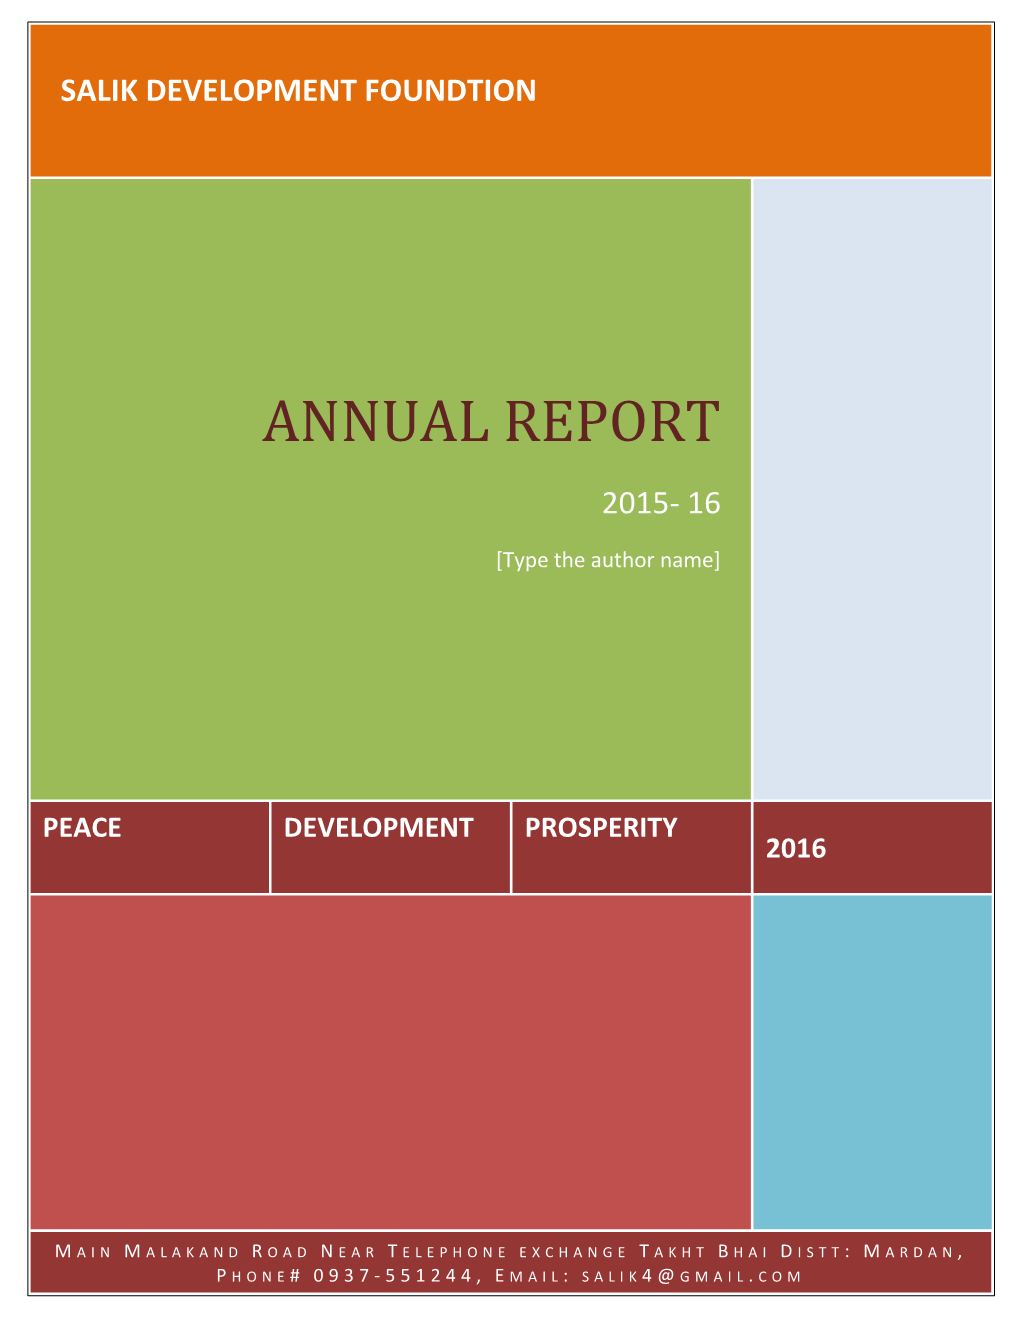 SDF Annual Report 2015-16